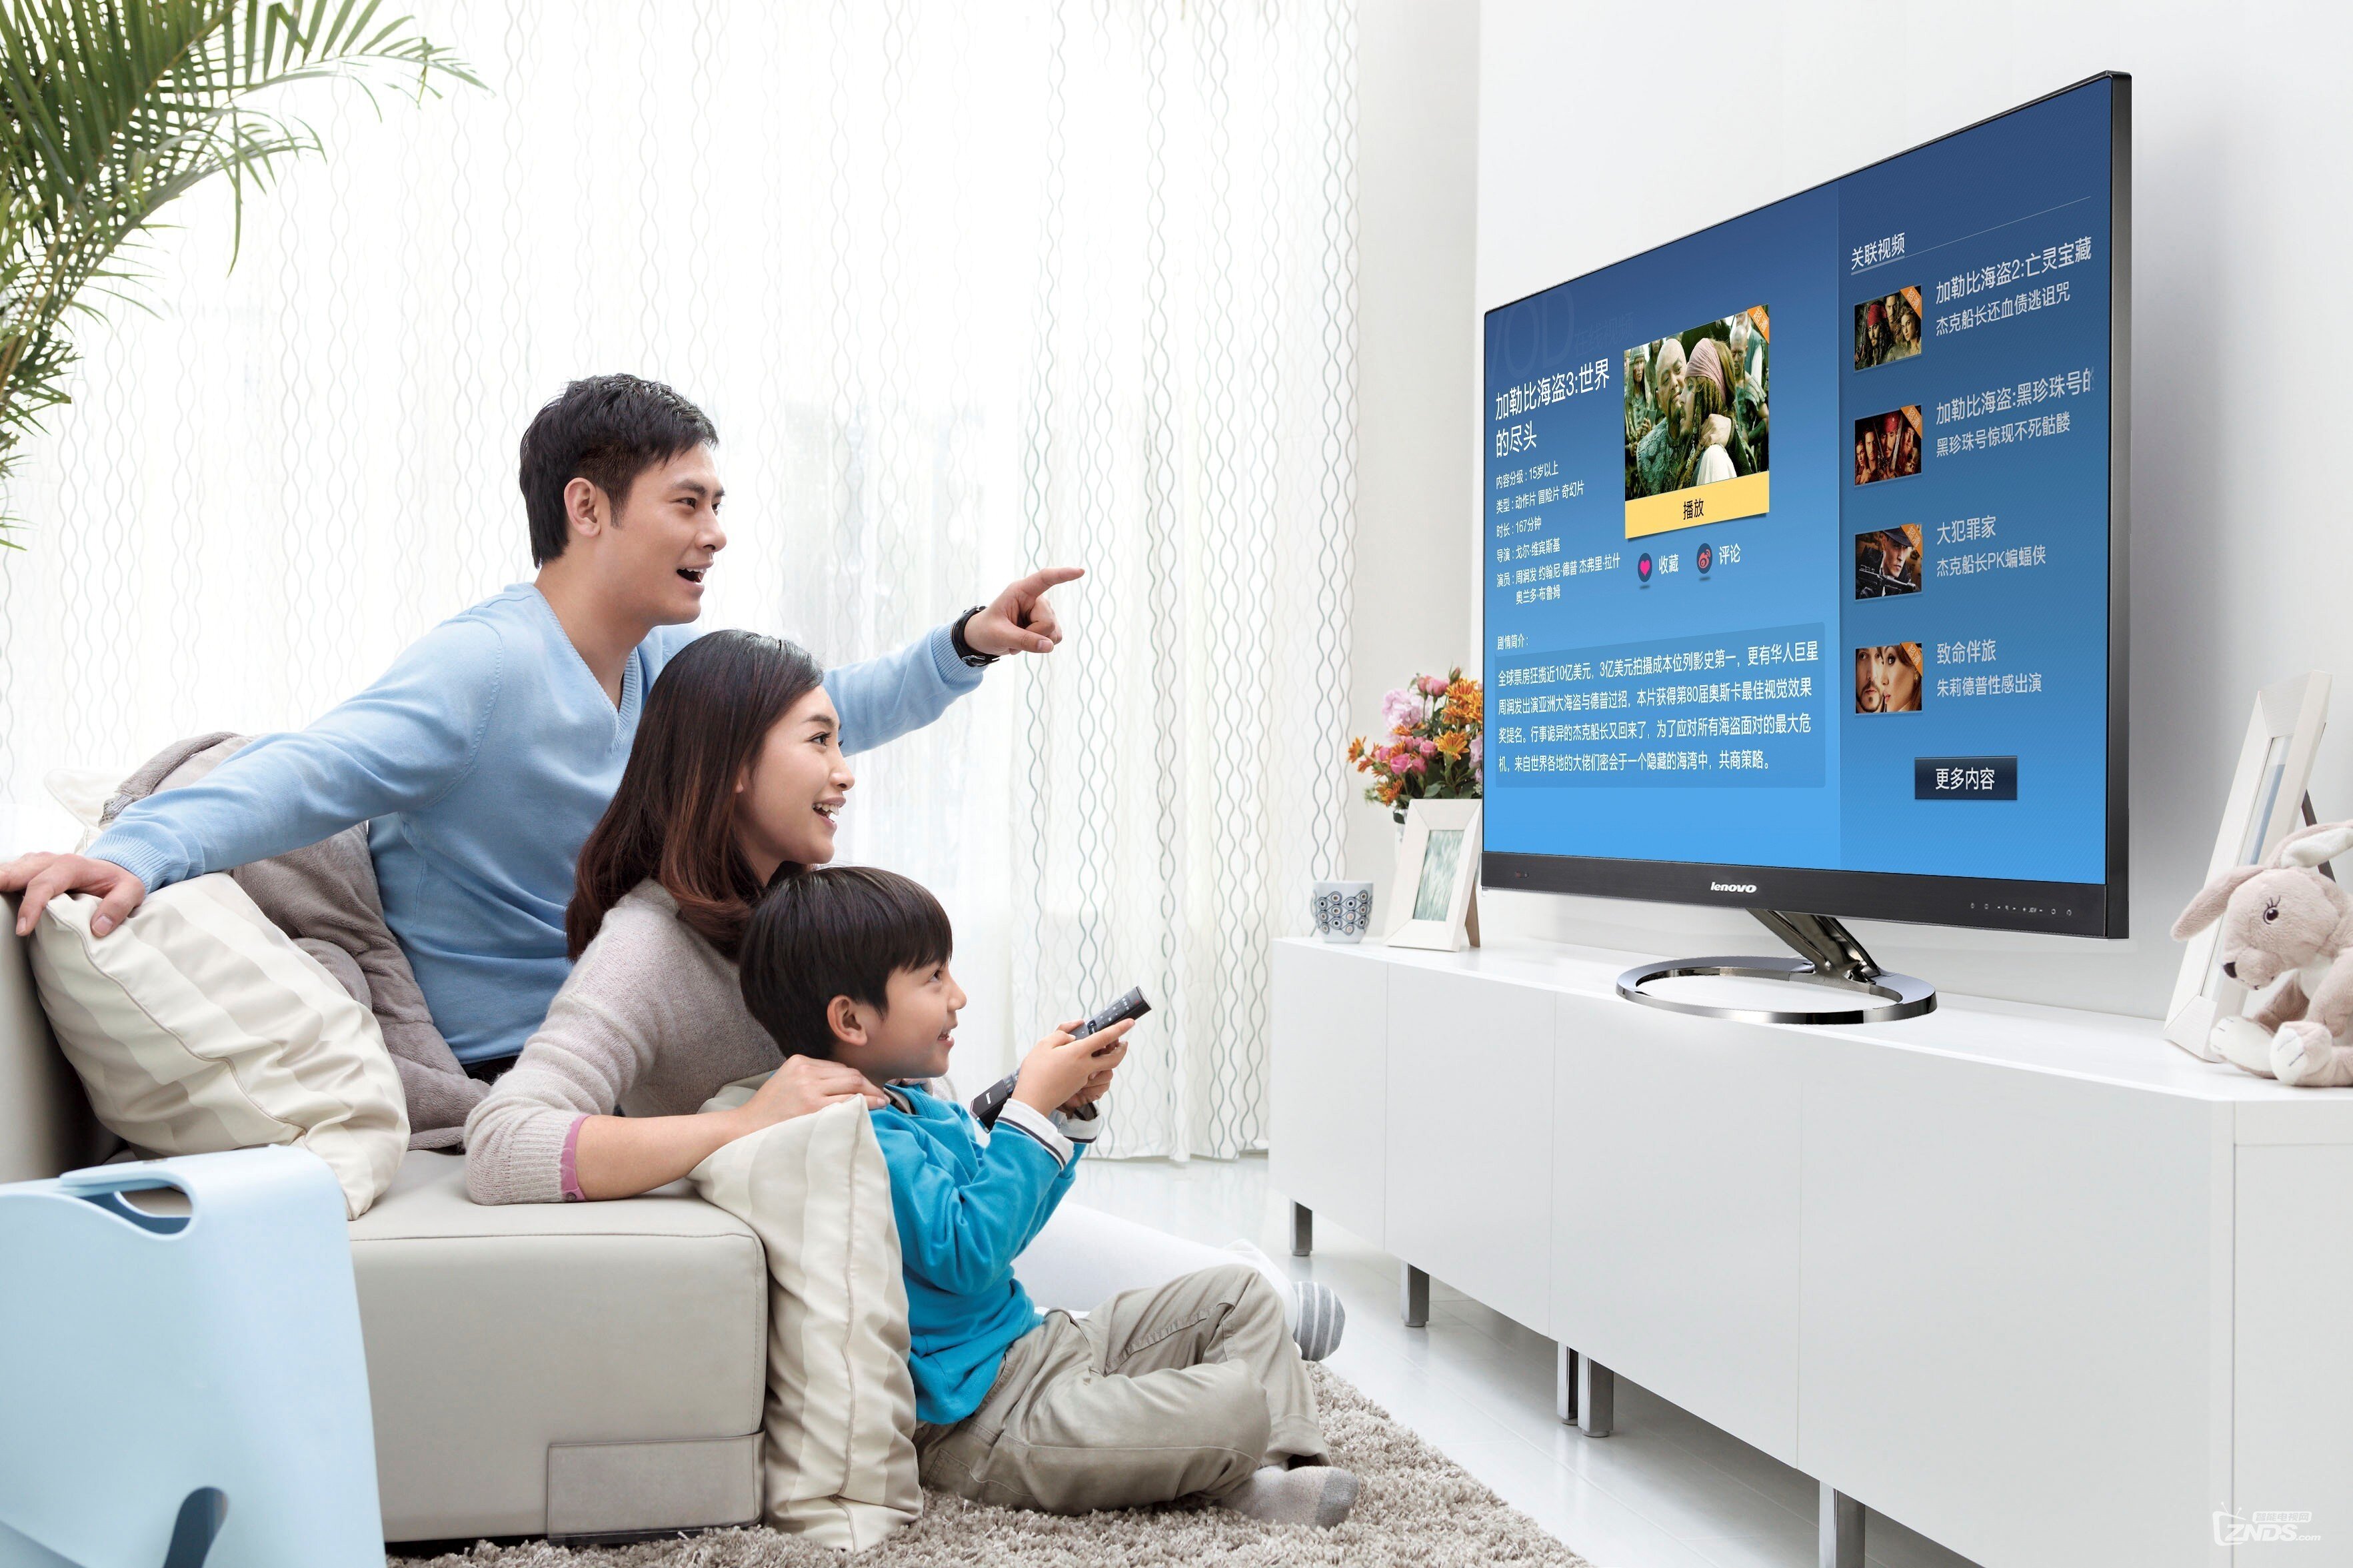 低价电视选购指南:买普通电视or智能电视?_综